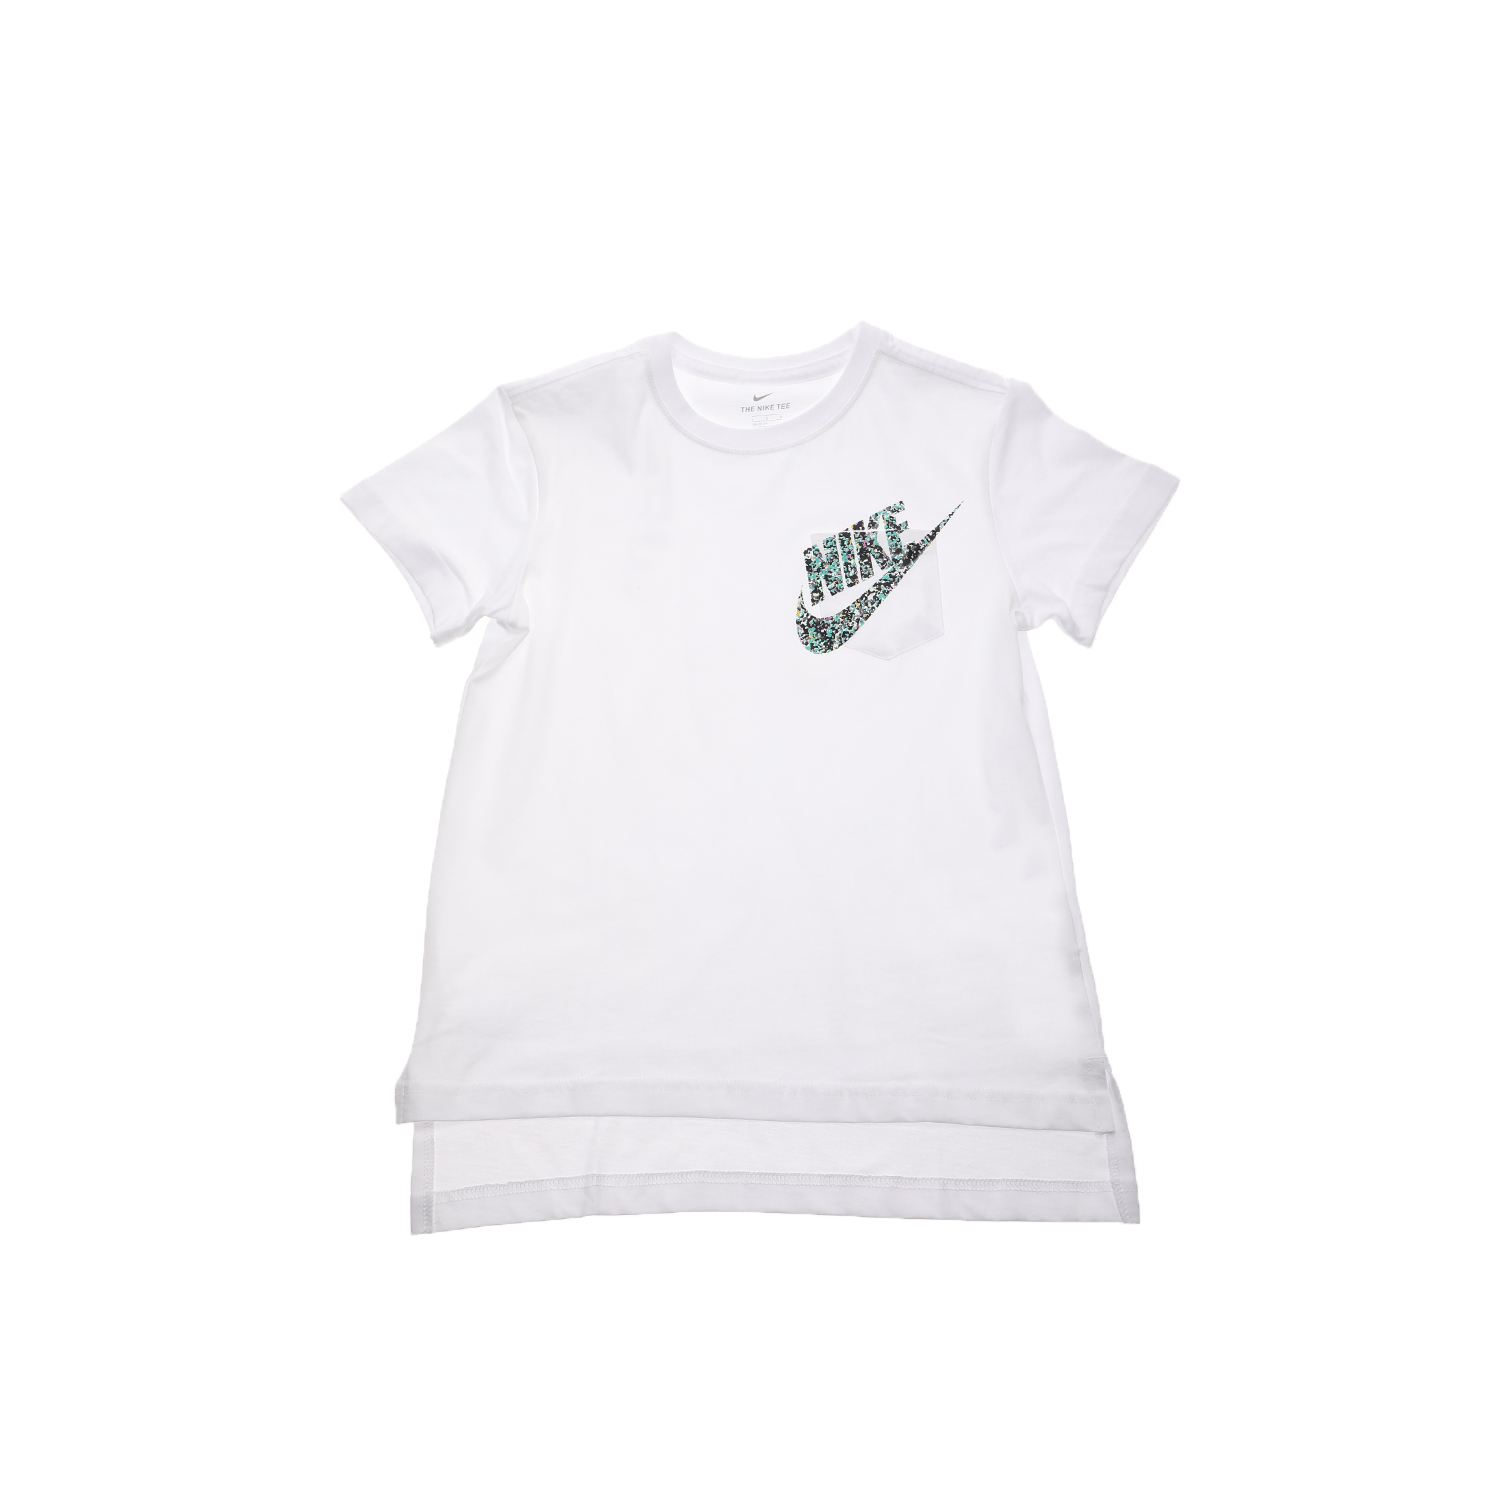 Παιδικά/Girls/Ρούχα/Αθλητικά NIKE - Παιδικό t-shirt NIKE NSW TEE DPTL MELTED CRAYONS λευκό